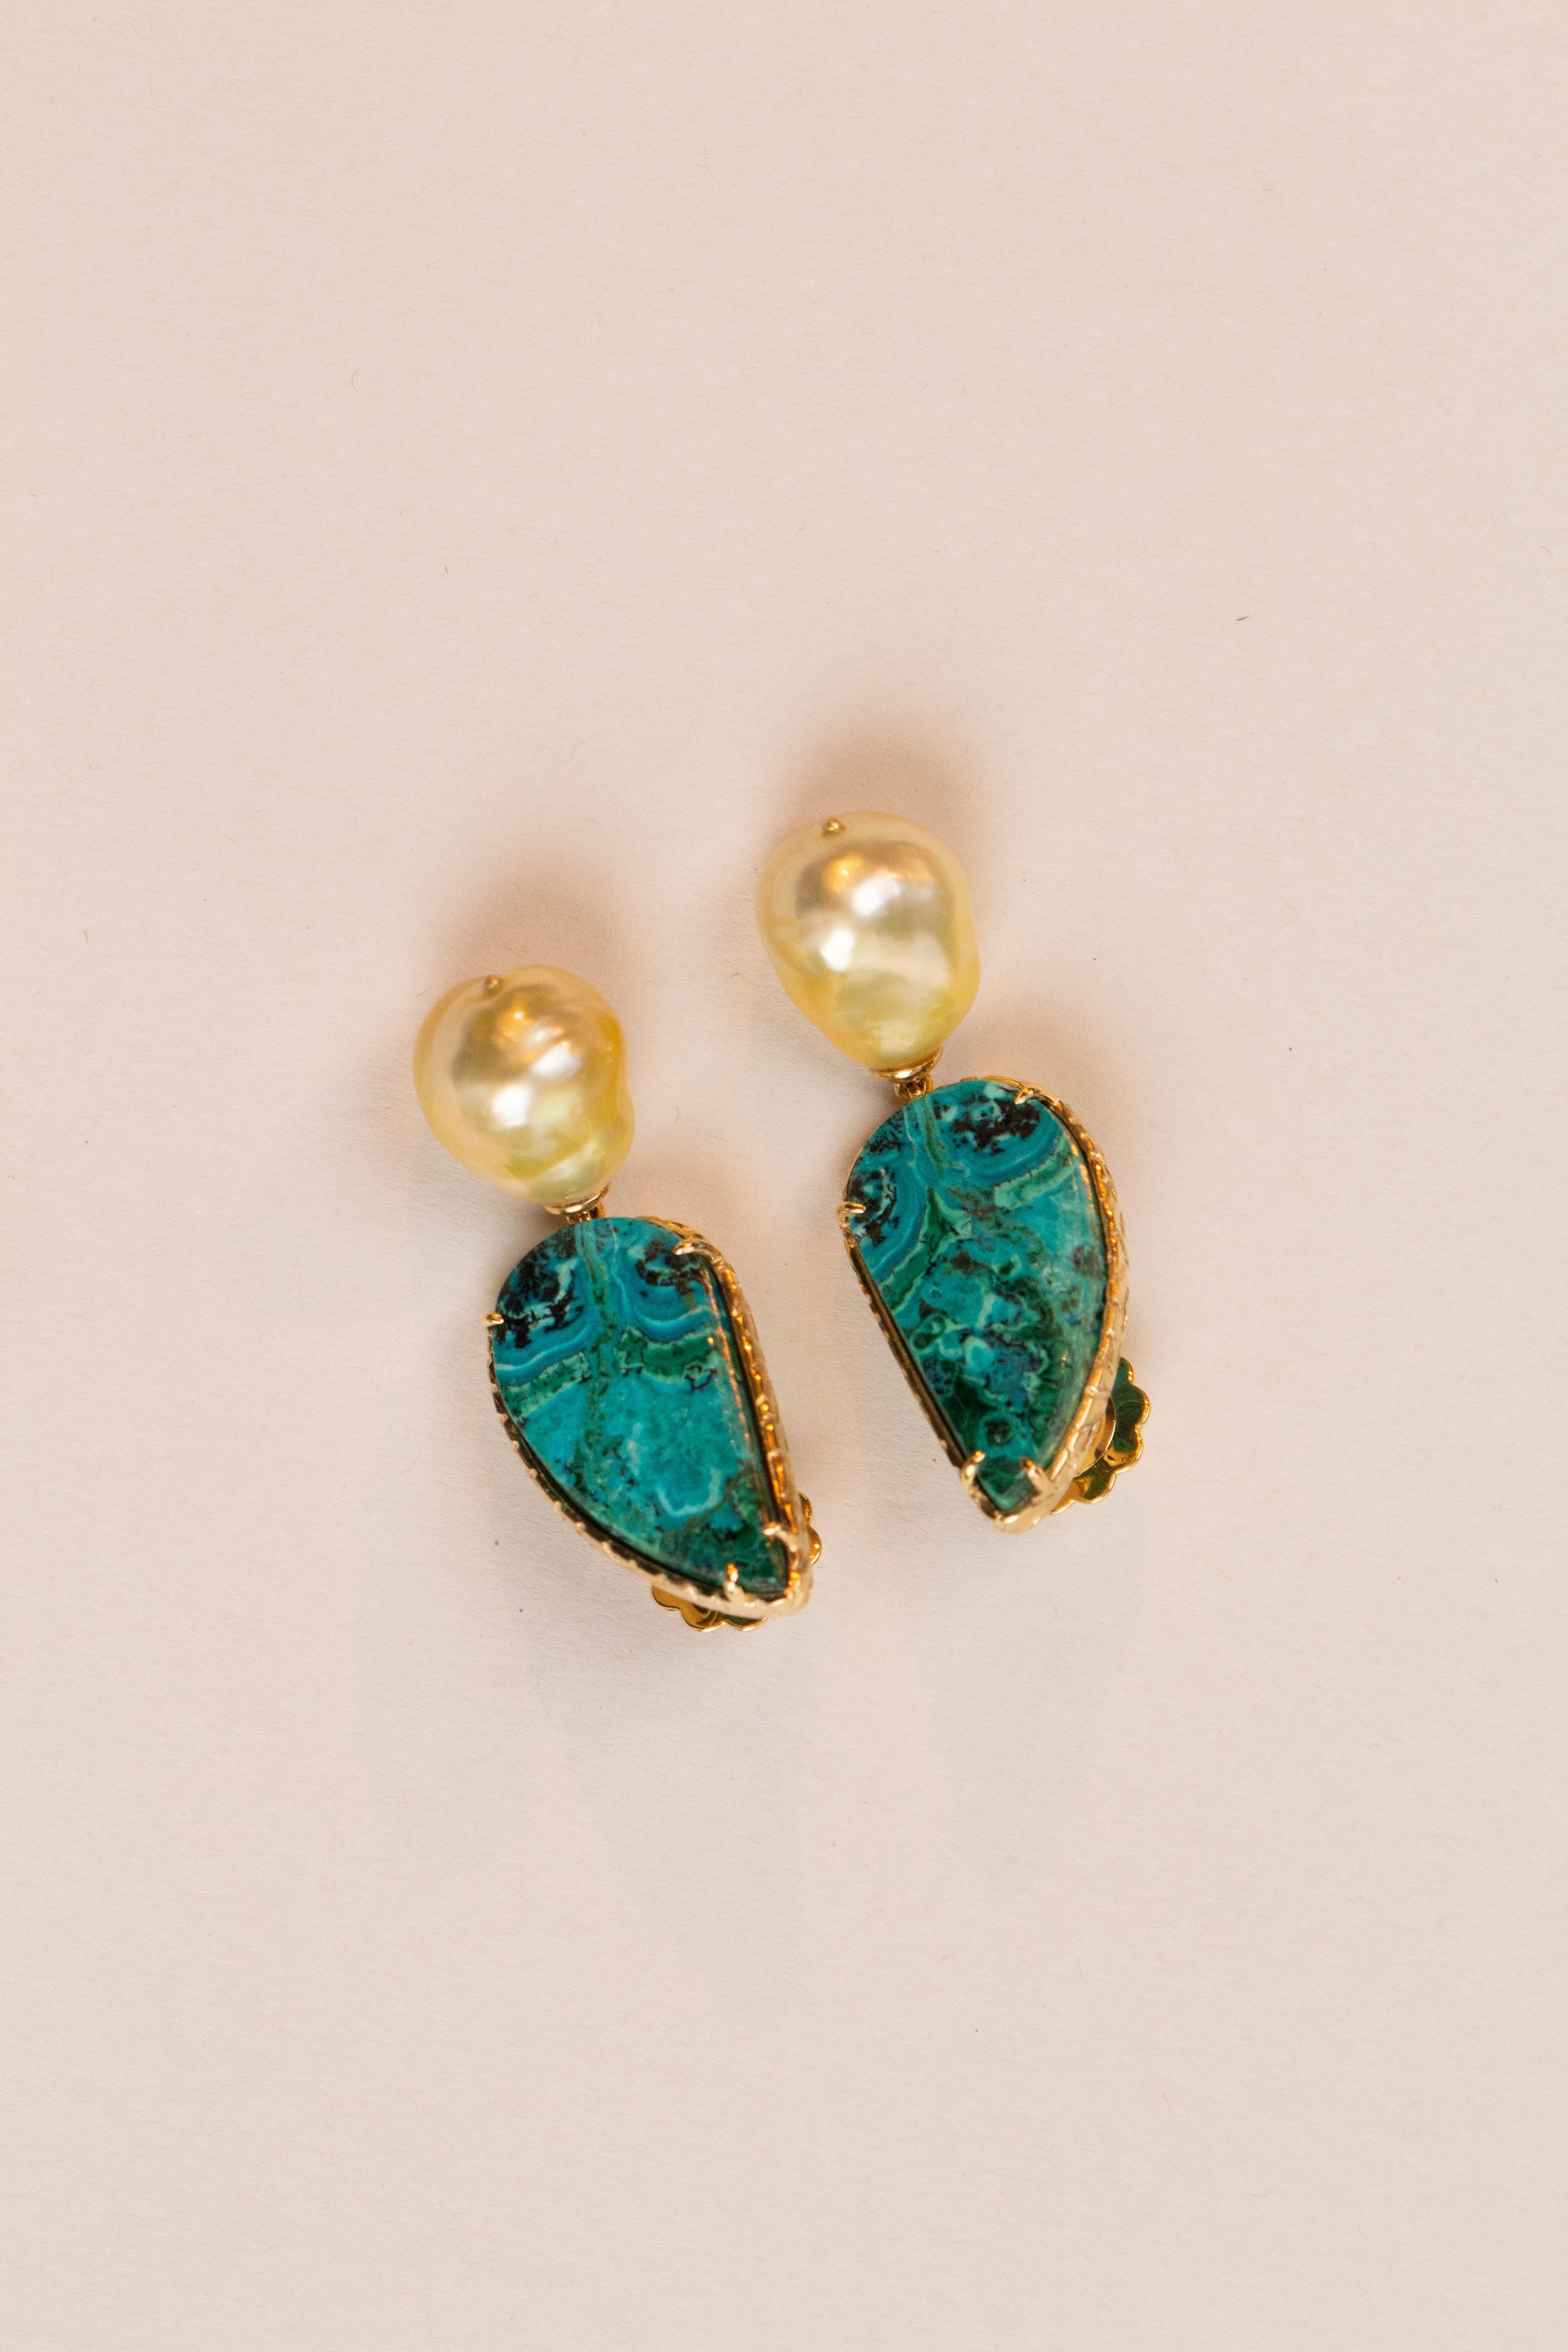 Boucles d'oreilles azzurrite triangulaire et perles naturelles en or 18k gr 7,80.
Tous les bijoux Giulia Colussi sont neufs et n'ont jamais été portés ou possédés auparavant. Chaque article arrivera à votre porte joliment emballé dans nos boîtes,